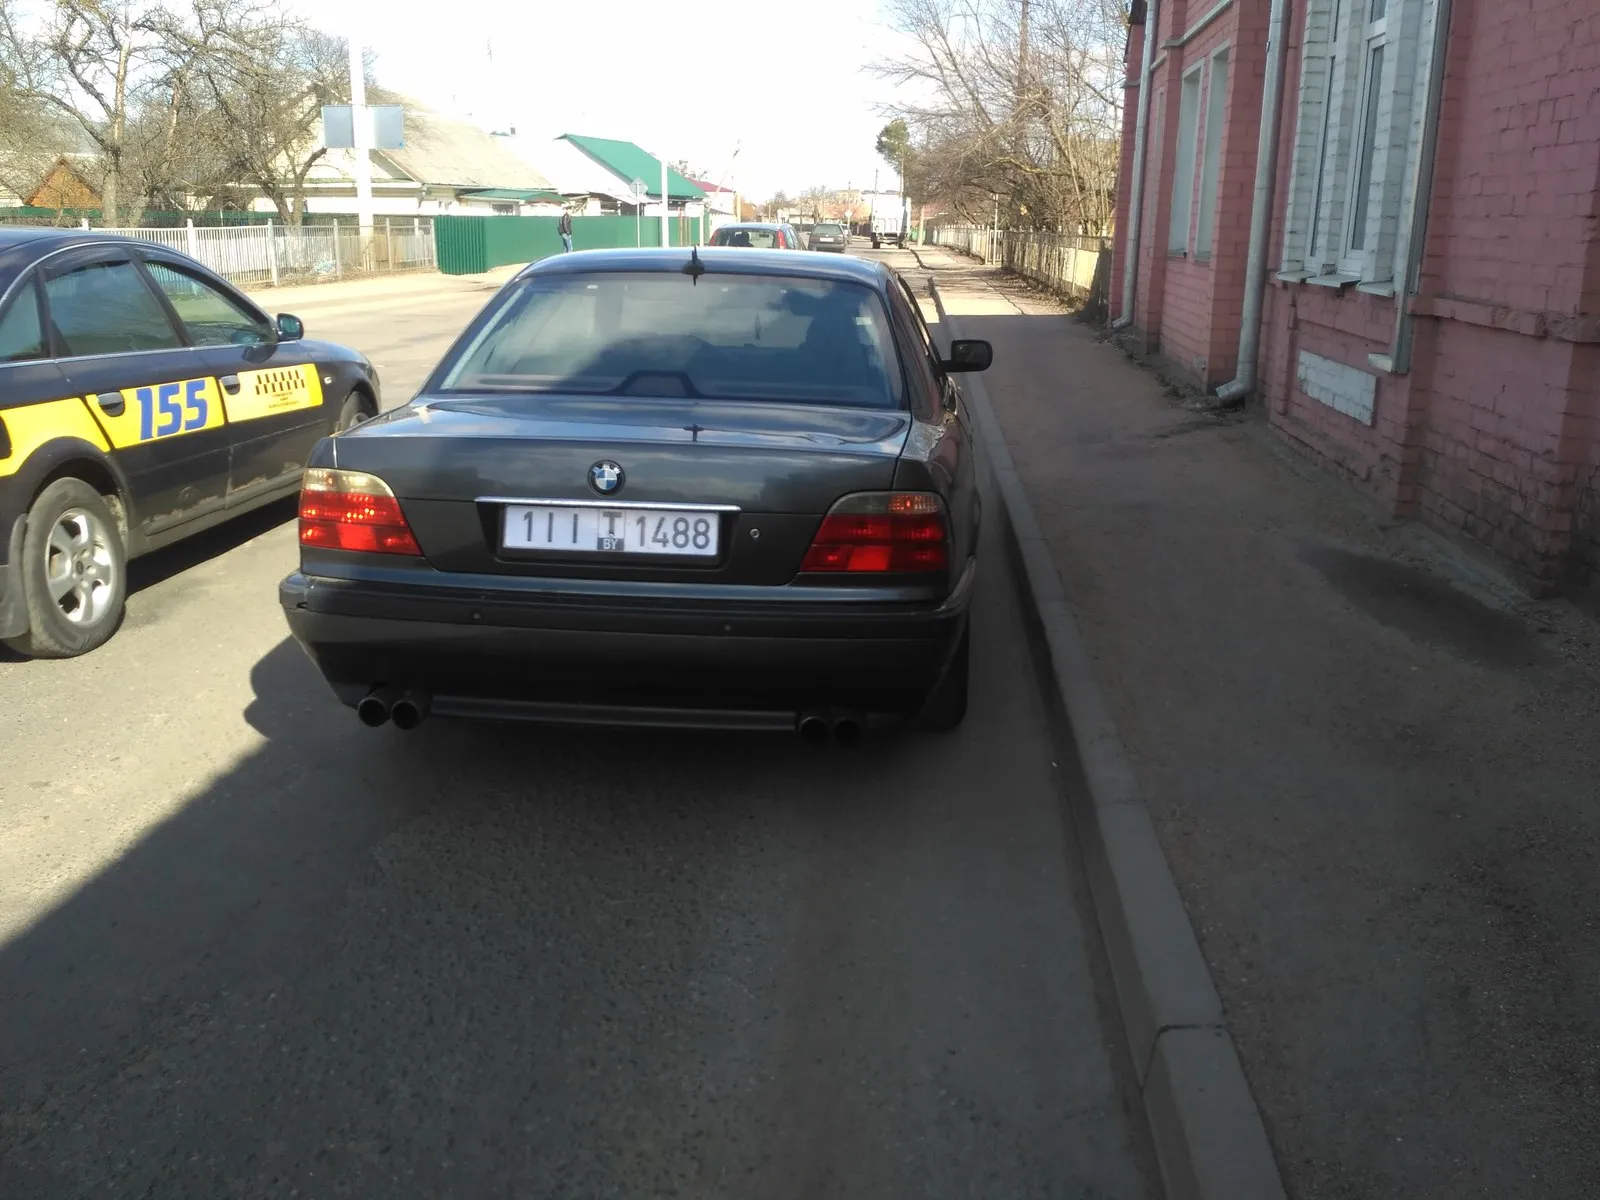 1488 что за цифра. BMW 1488. Номер 1488 авто. Номерной знак 1488. Украинские номера 1488.